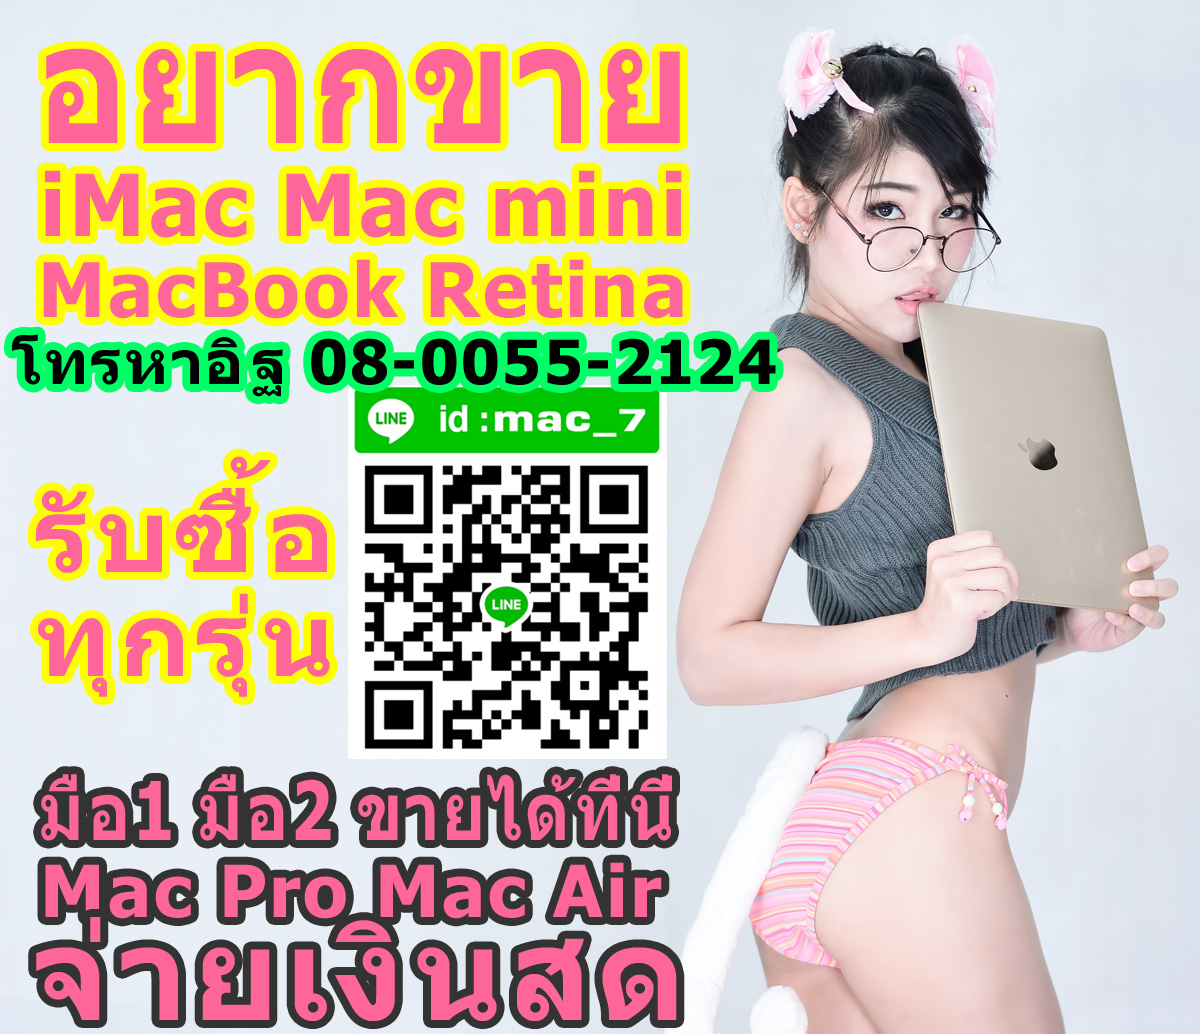 อยากขายแมค อยากขายไอแมค เอามาขายเรา รับซื้อแมค ทุกรุ่น จ่ายเงินสด เต็มราคา 080-055-2124 อิฐ  Add Line mac_7 รูปที่ 1